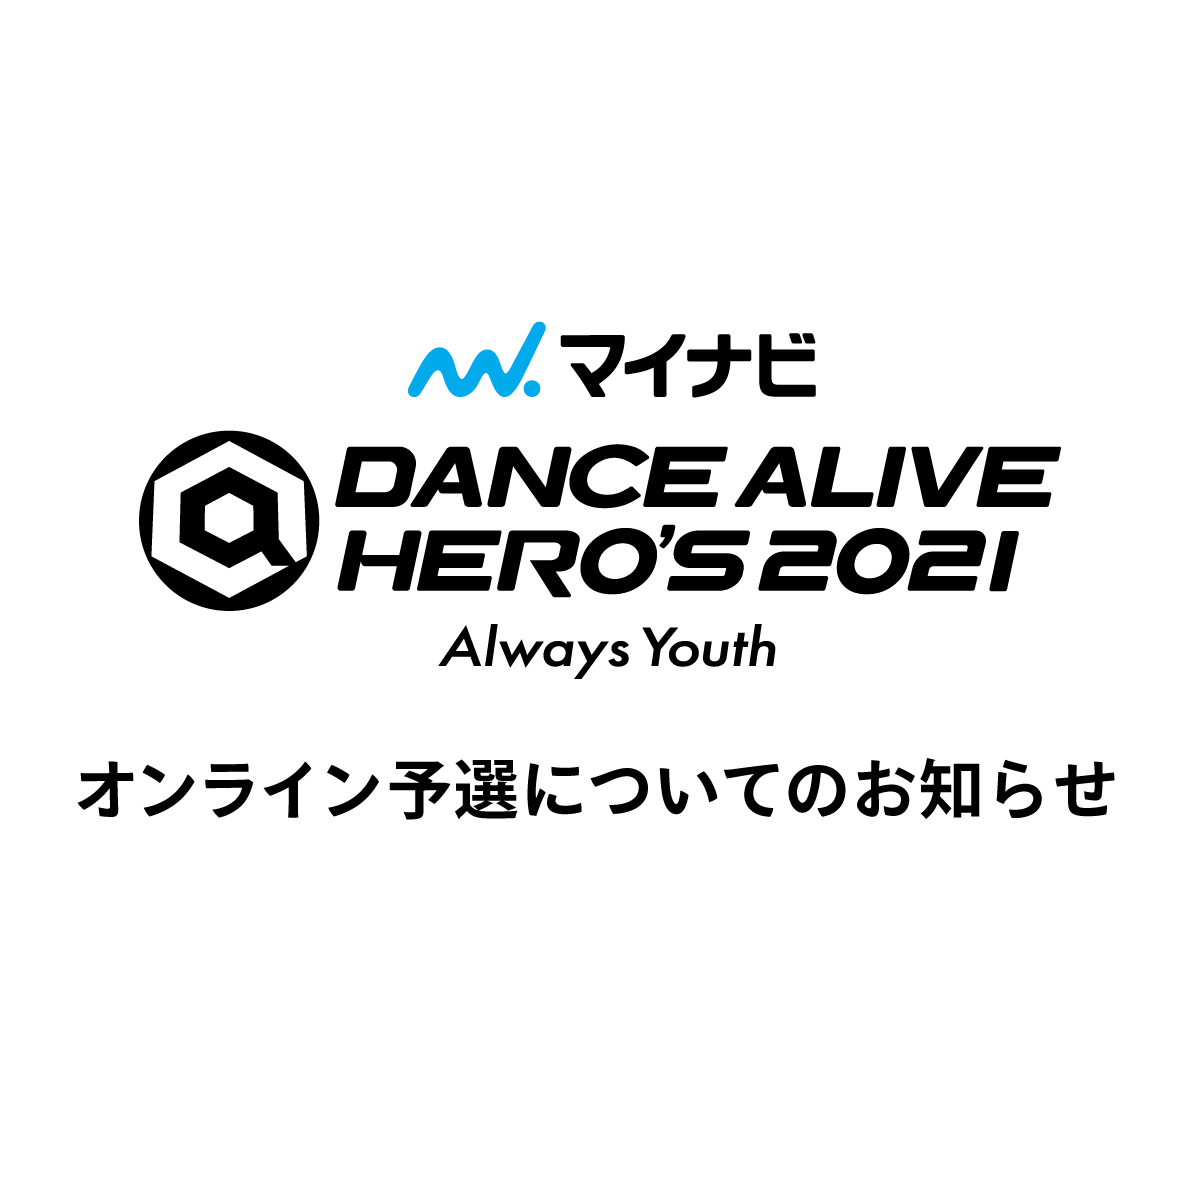 「マイナビDANCE ALIVE HERO’S 2021」オンライン予選についてのお知らせ